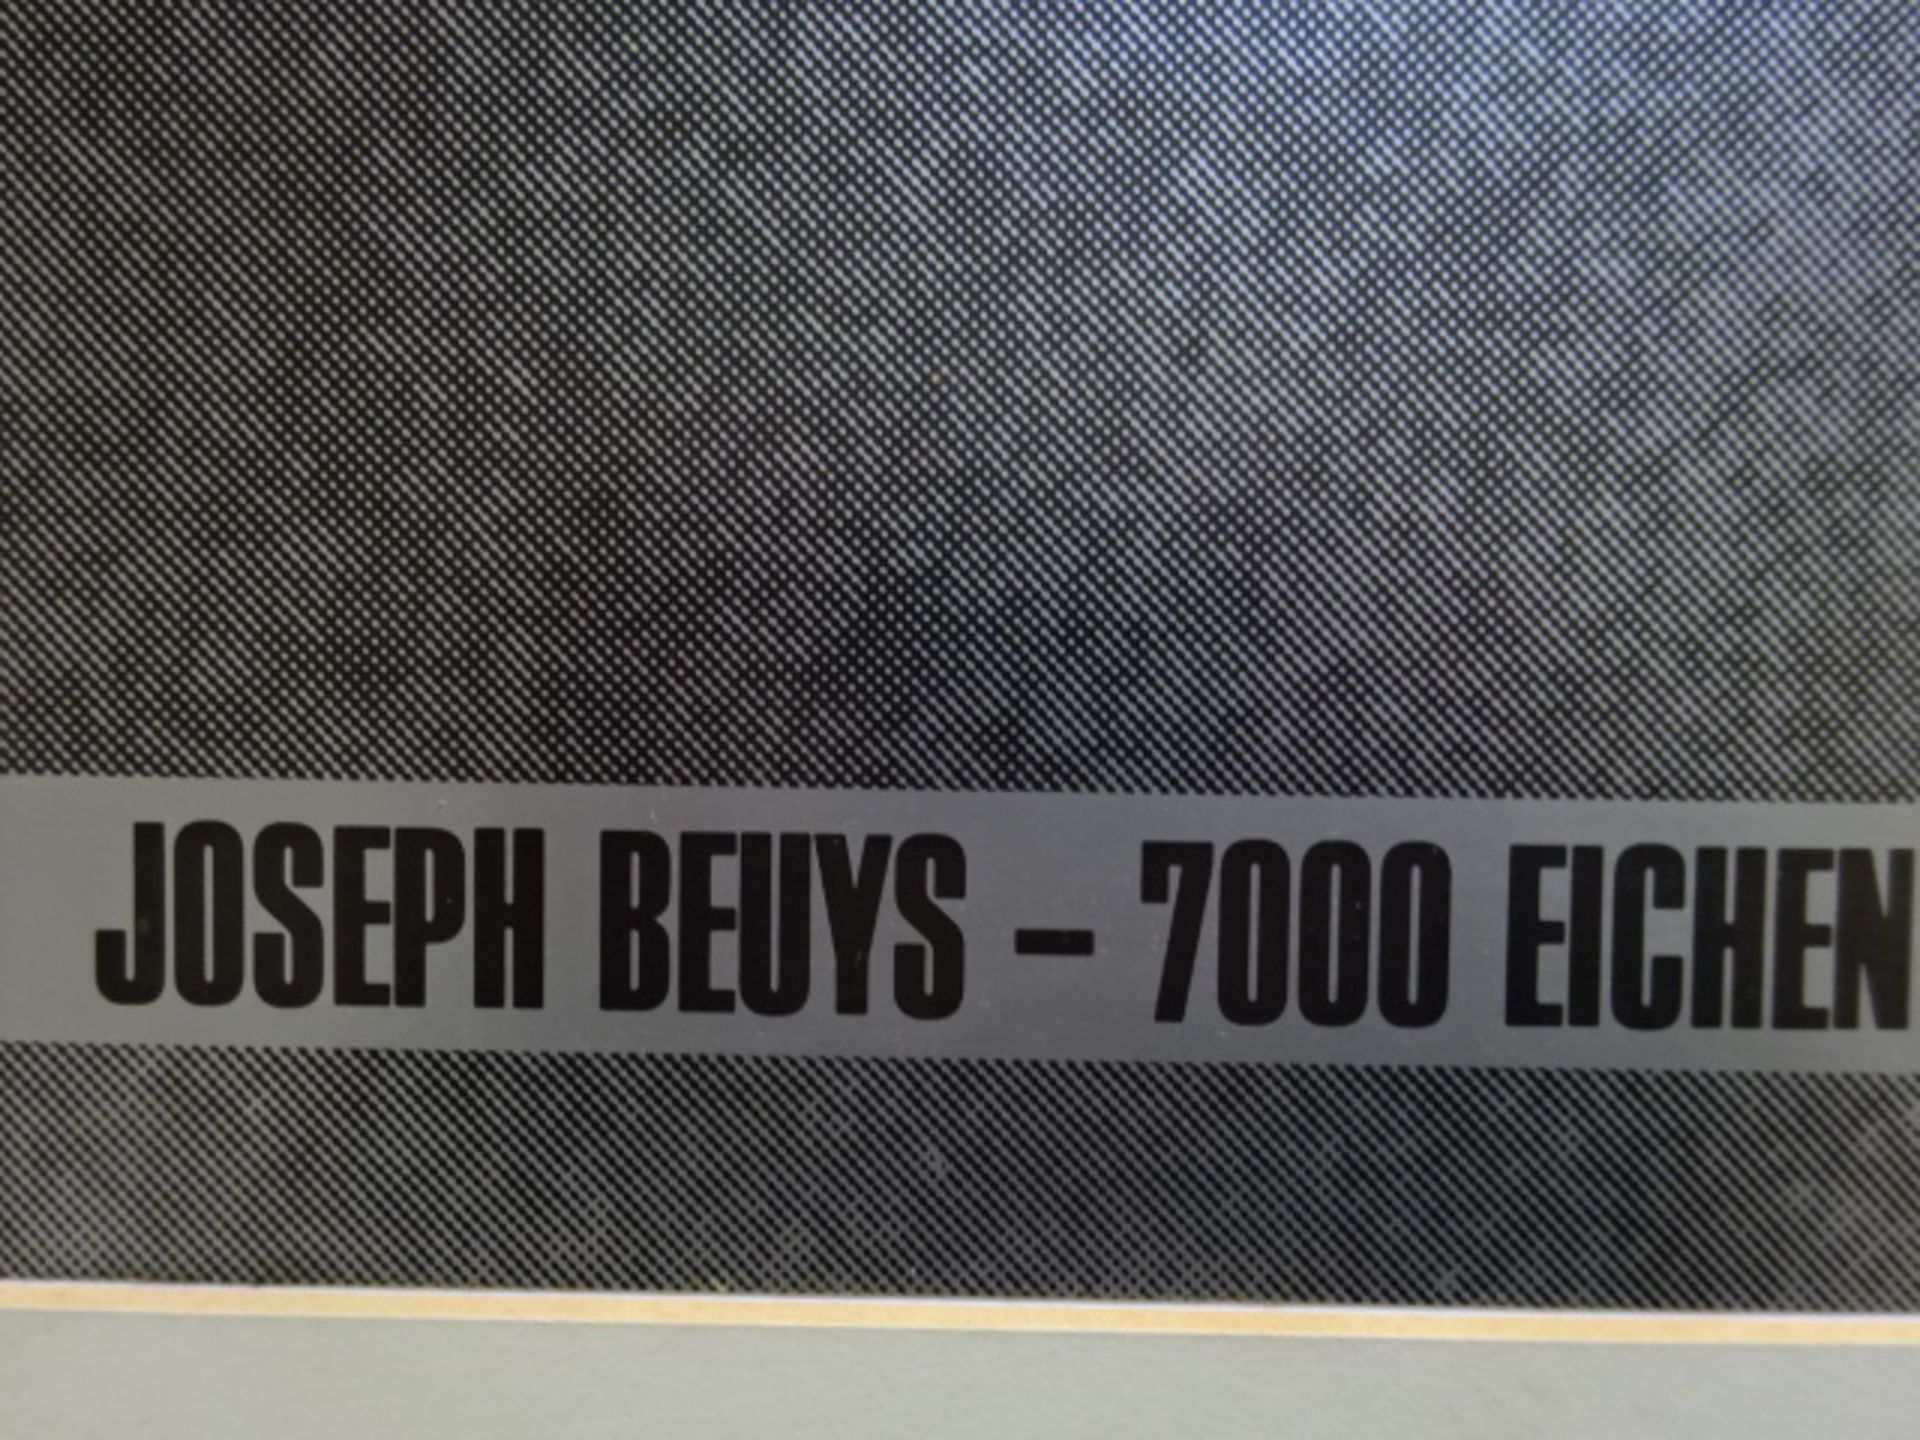 Beuys - 7000 Eichen (nicht signiert)